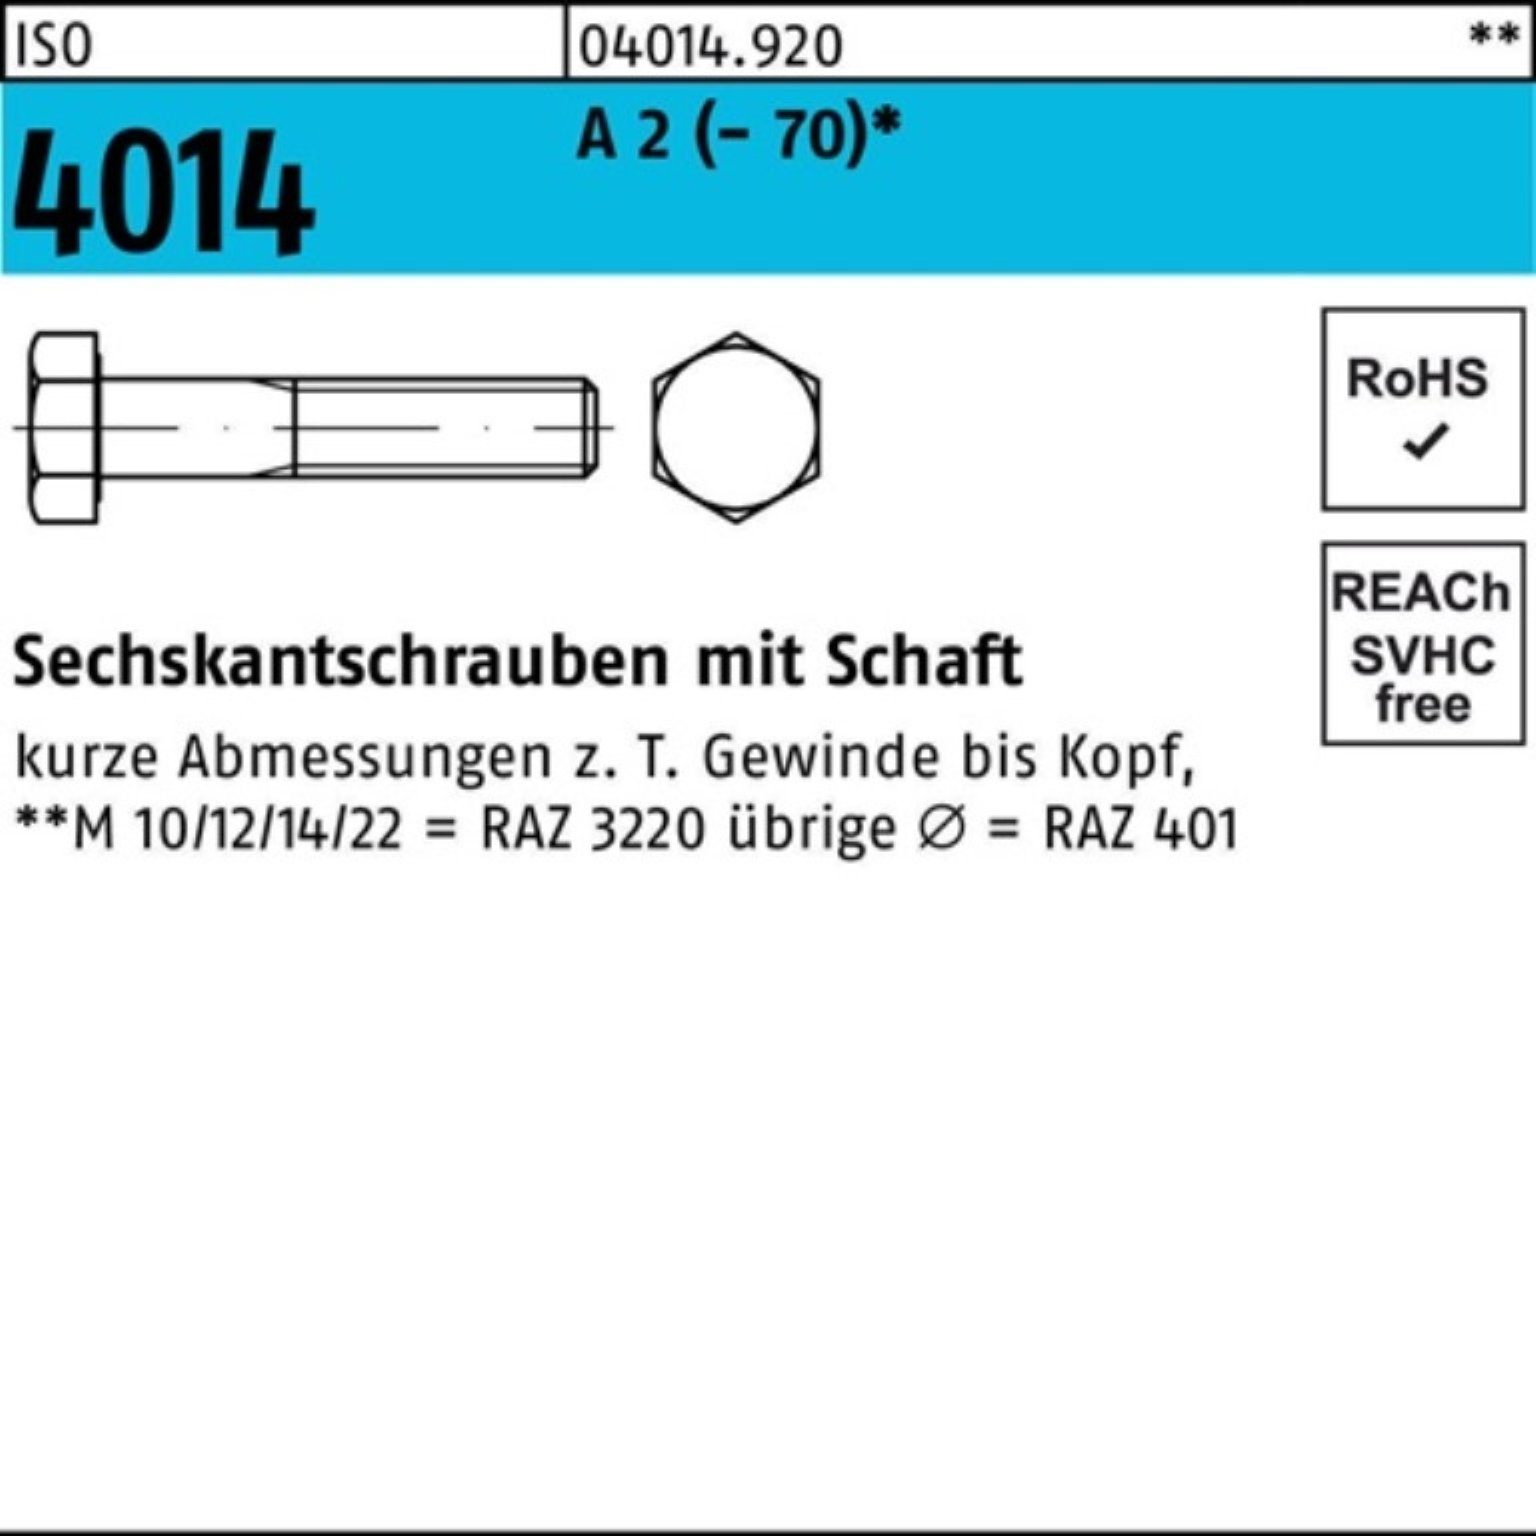 Bufab Sechskantschraube 100er Pack Sechskantschraube ISO 4014 Schaft M14x 130 A 2 (70) 25 St